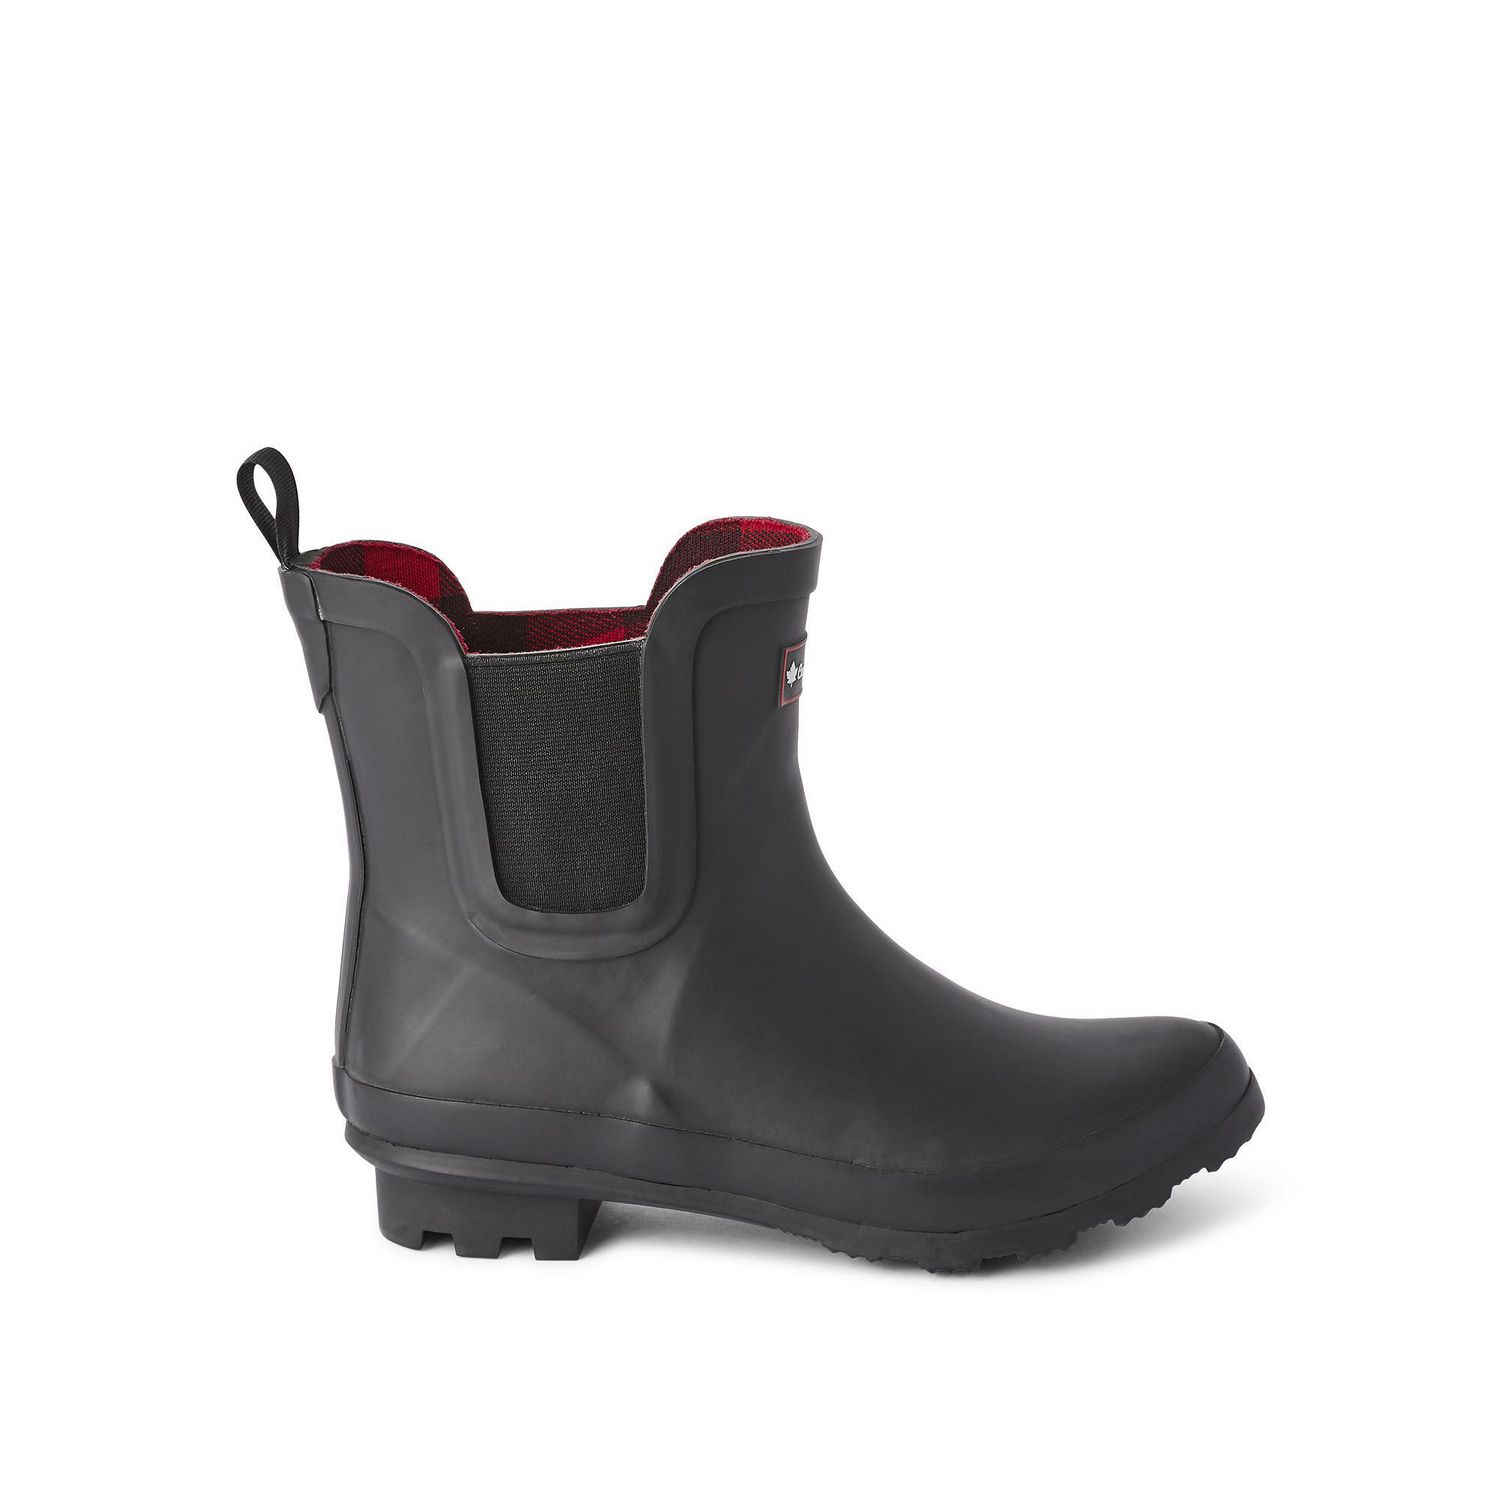 canadiana rain boots